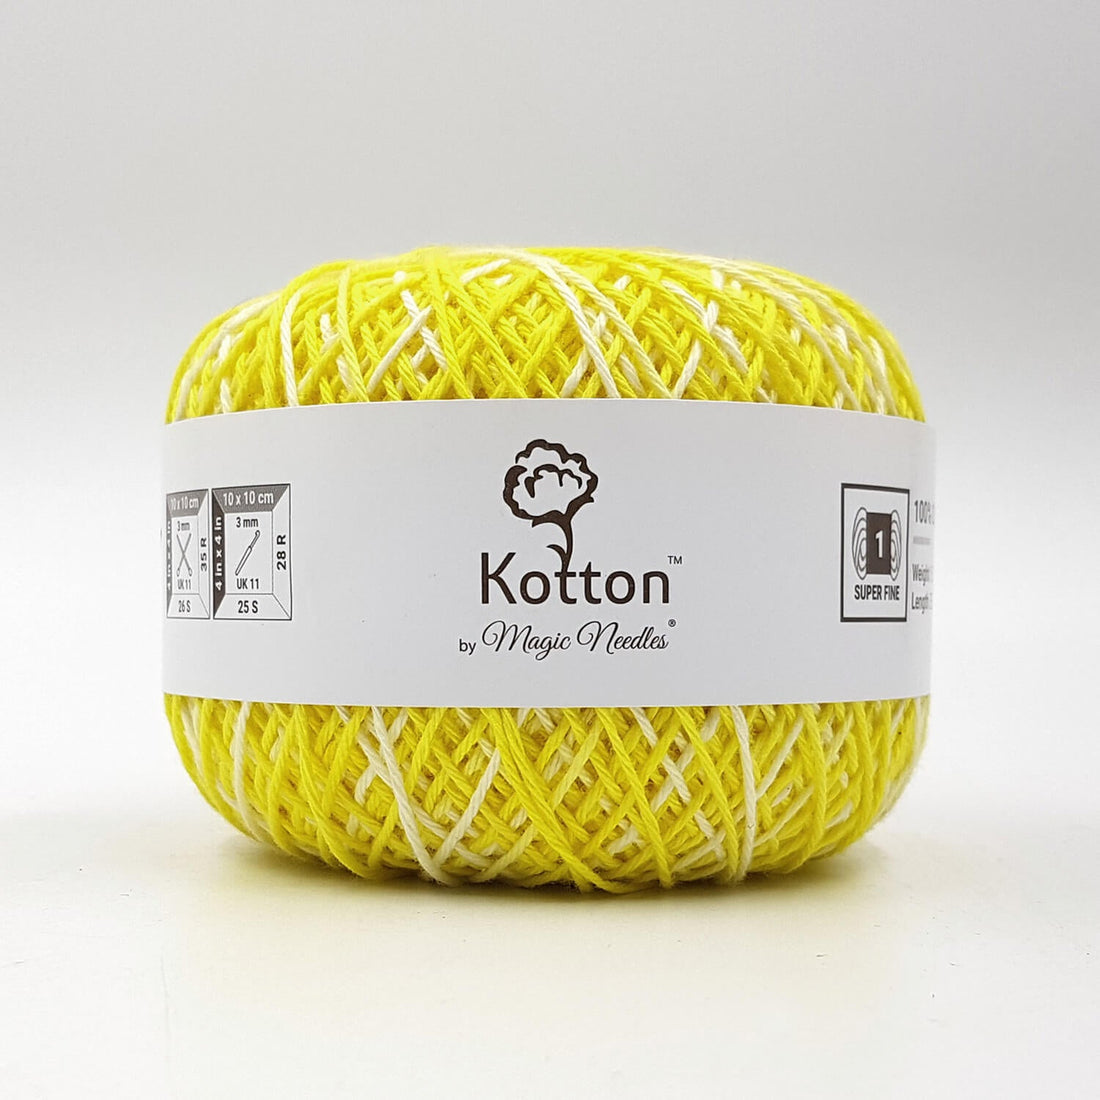 Kotton 4 ply Cotton Yarn 150 g - Multi Color 31